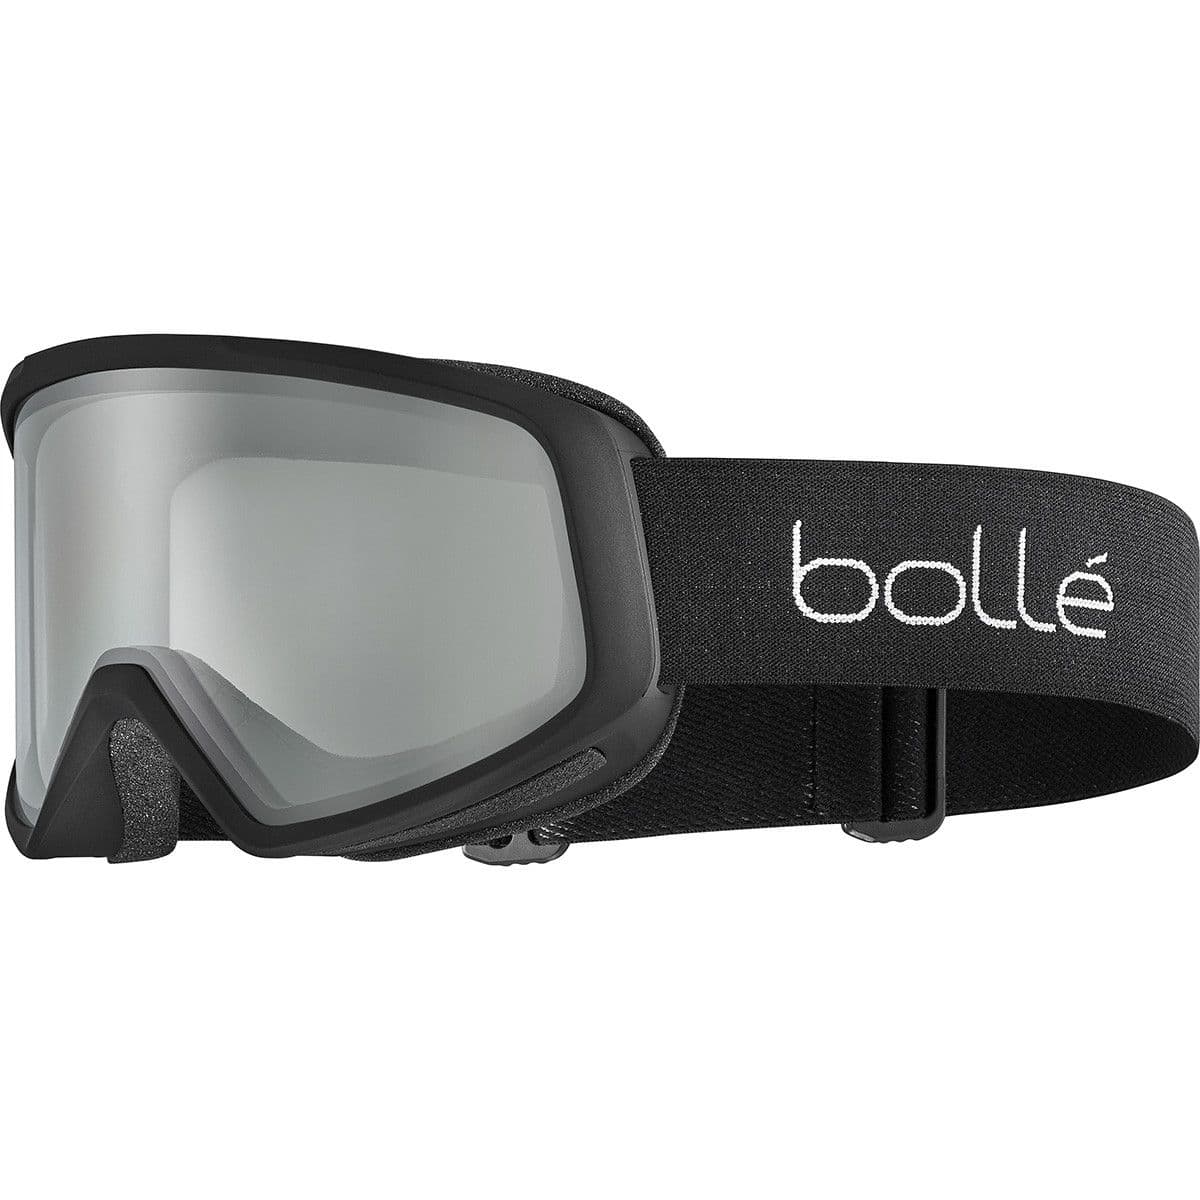 Bolle Bedrock Ski Goggles